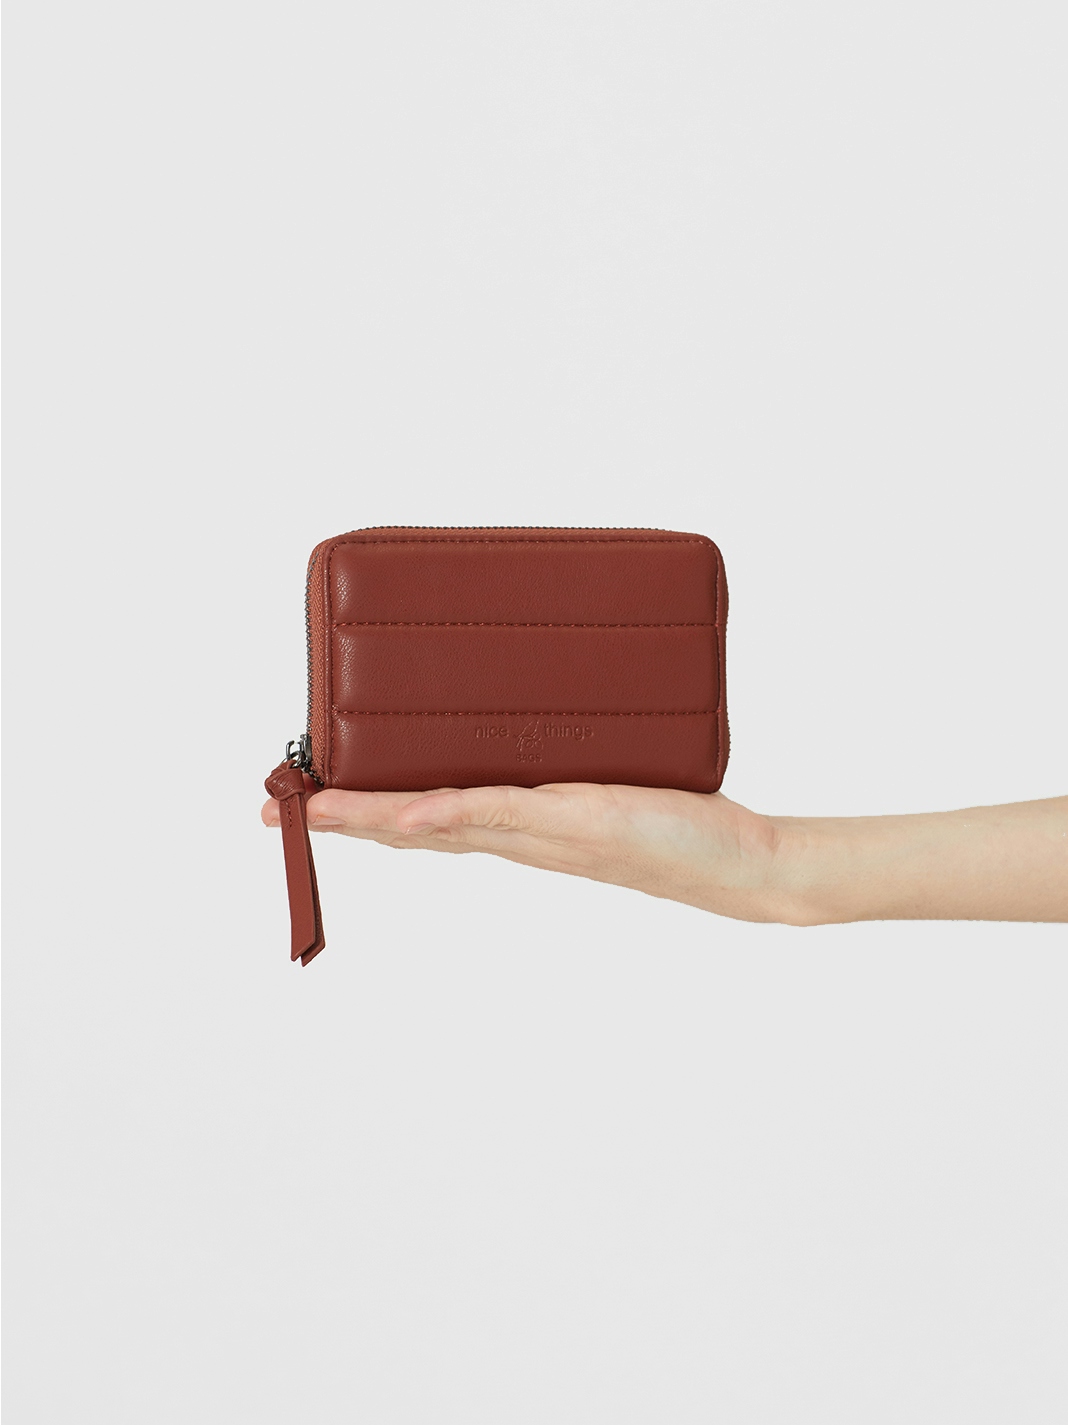 Eco-leather purse